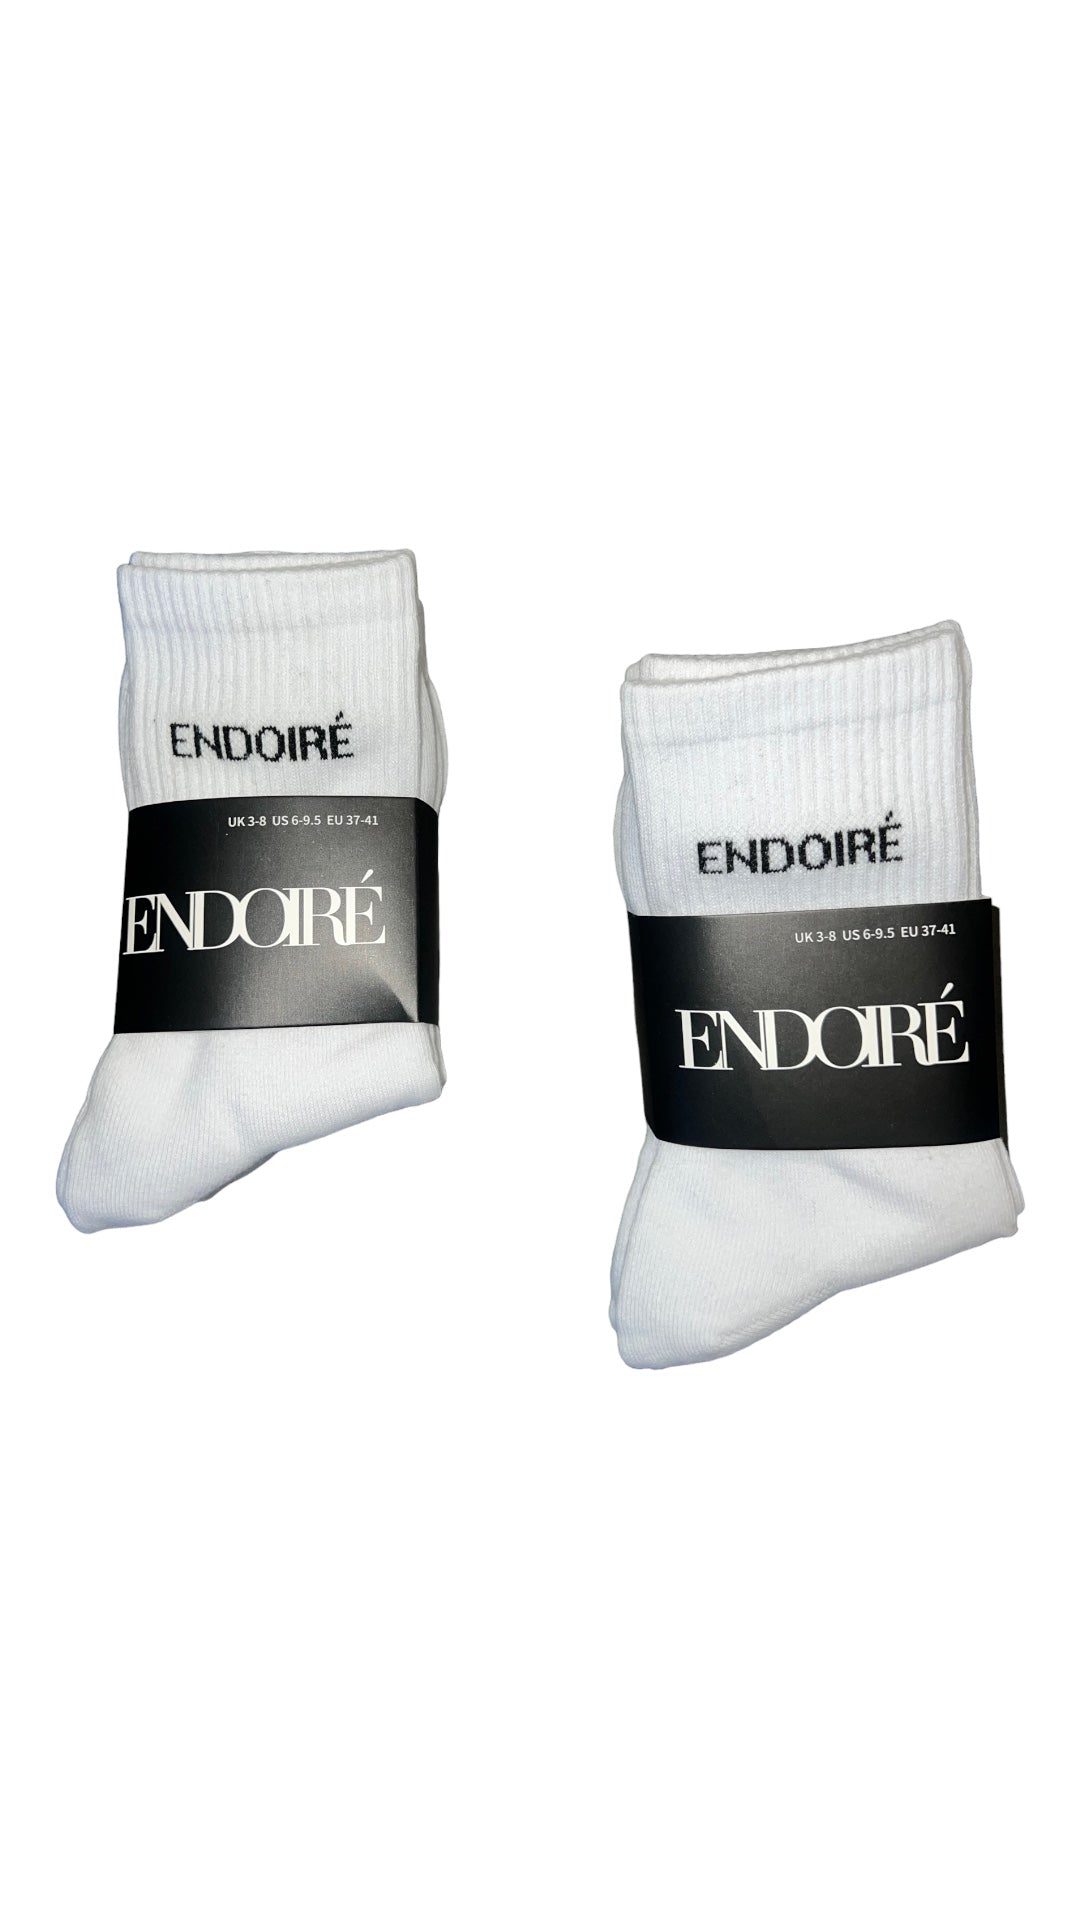 ENDOIRE’ Socks - 3 Pack In White